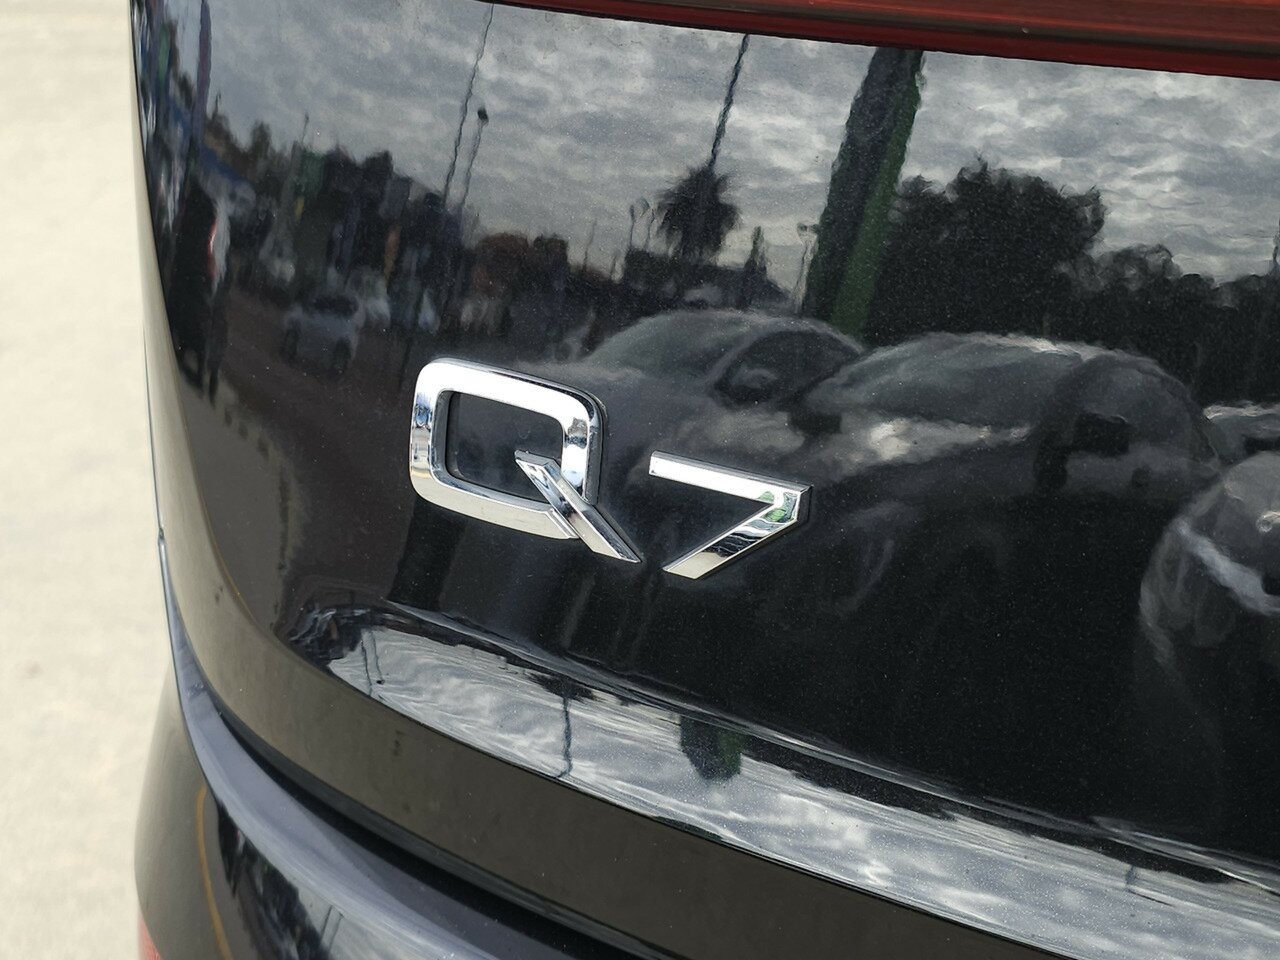 Audi Q7 image 3